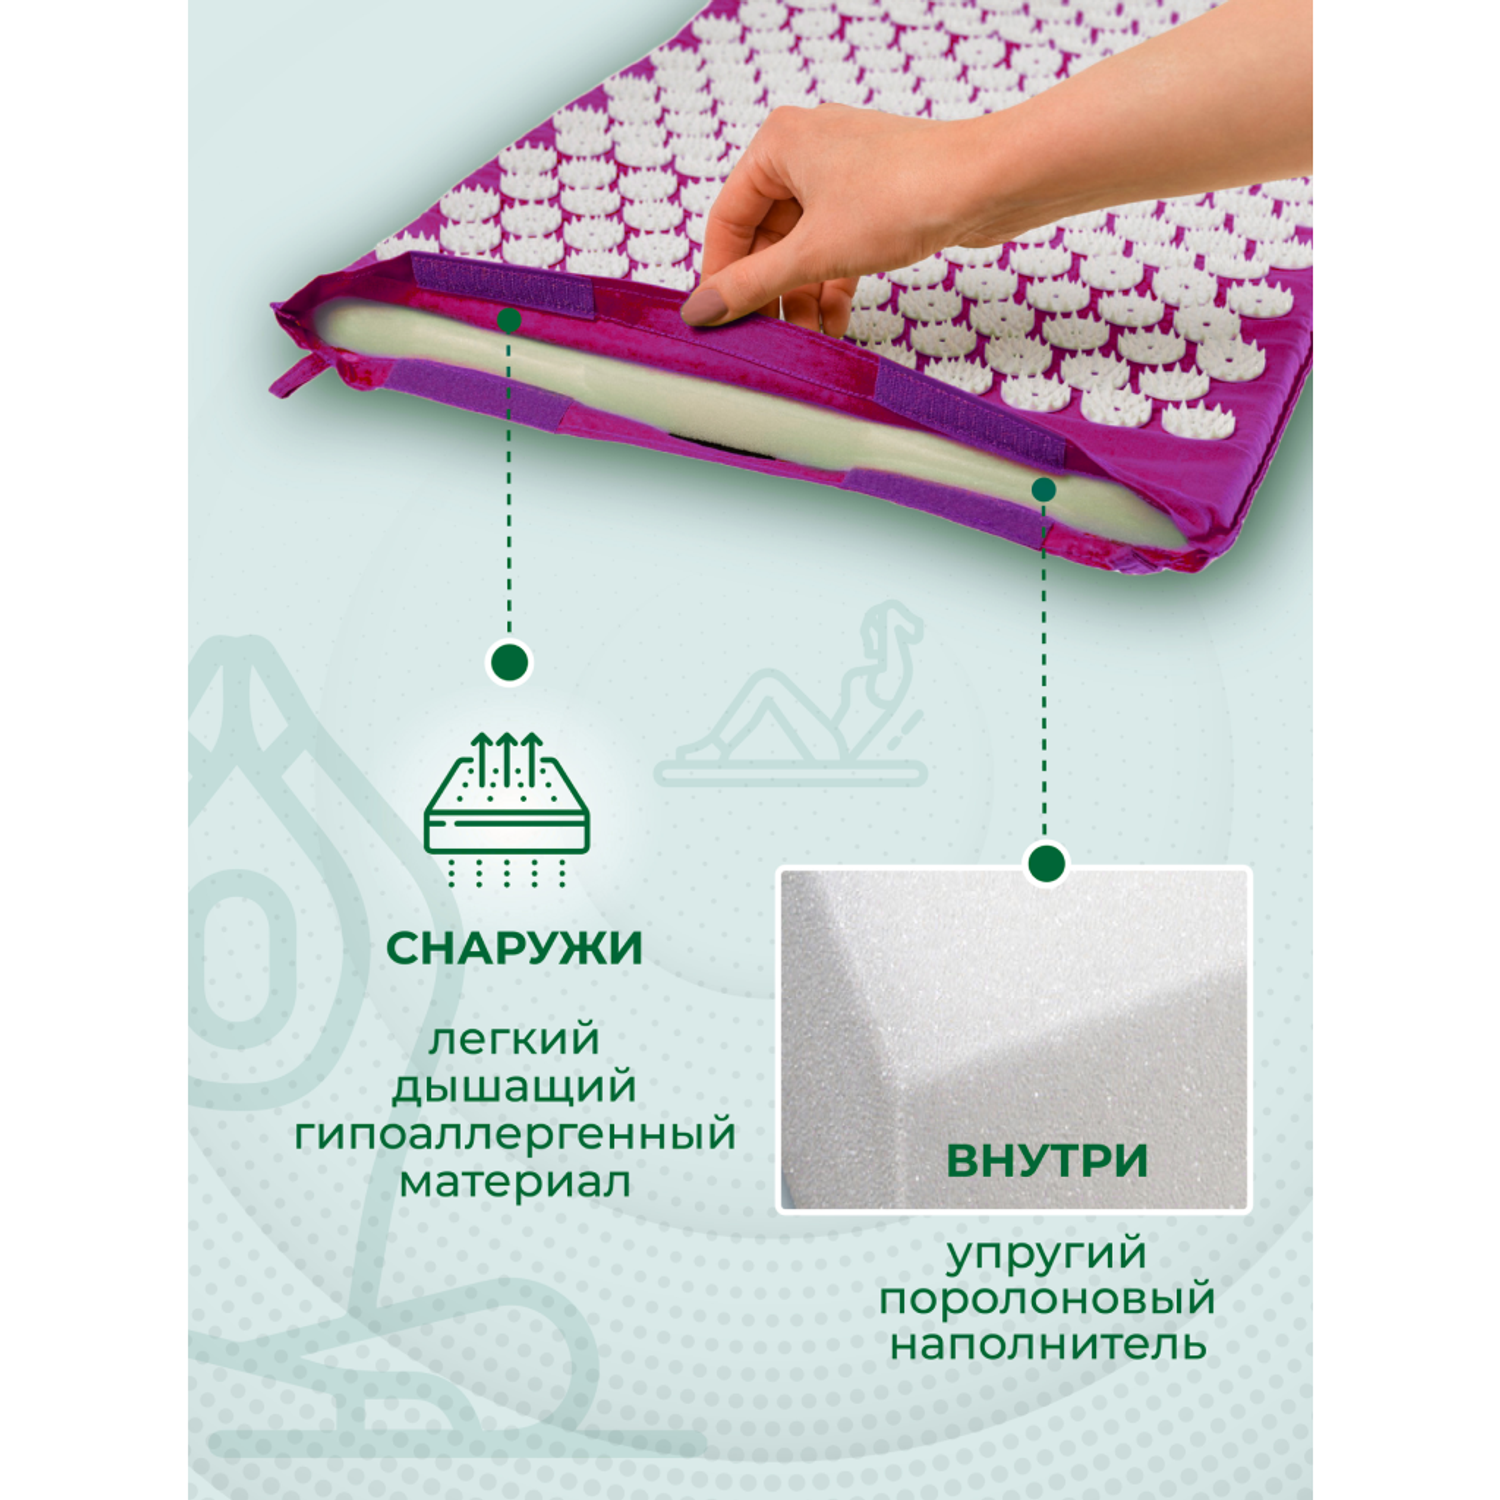 Аппликатор Кузнецова Solmax акупунктурный массажный коврик 72х41 см фиолетовый - фото 4